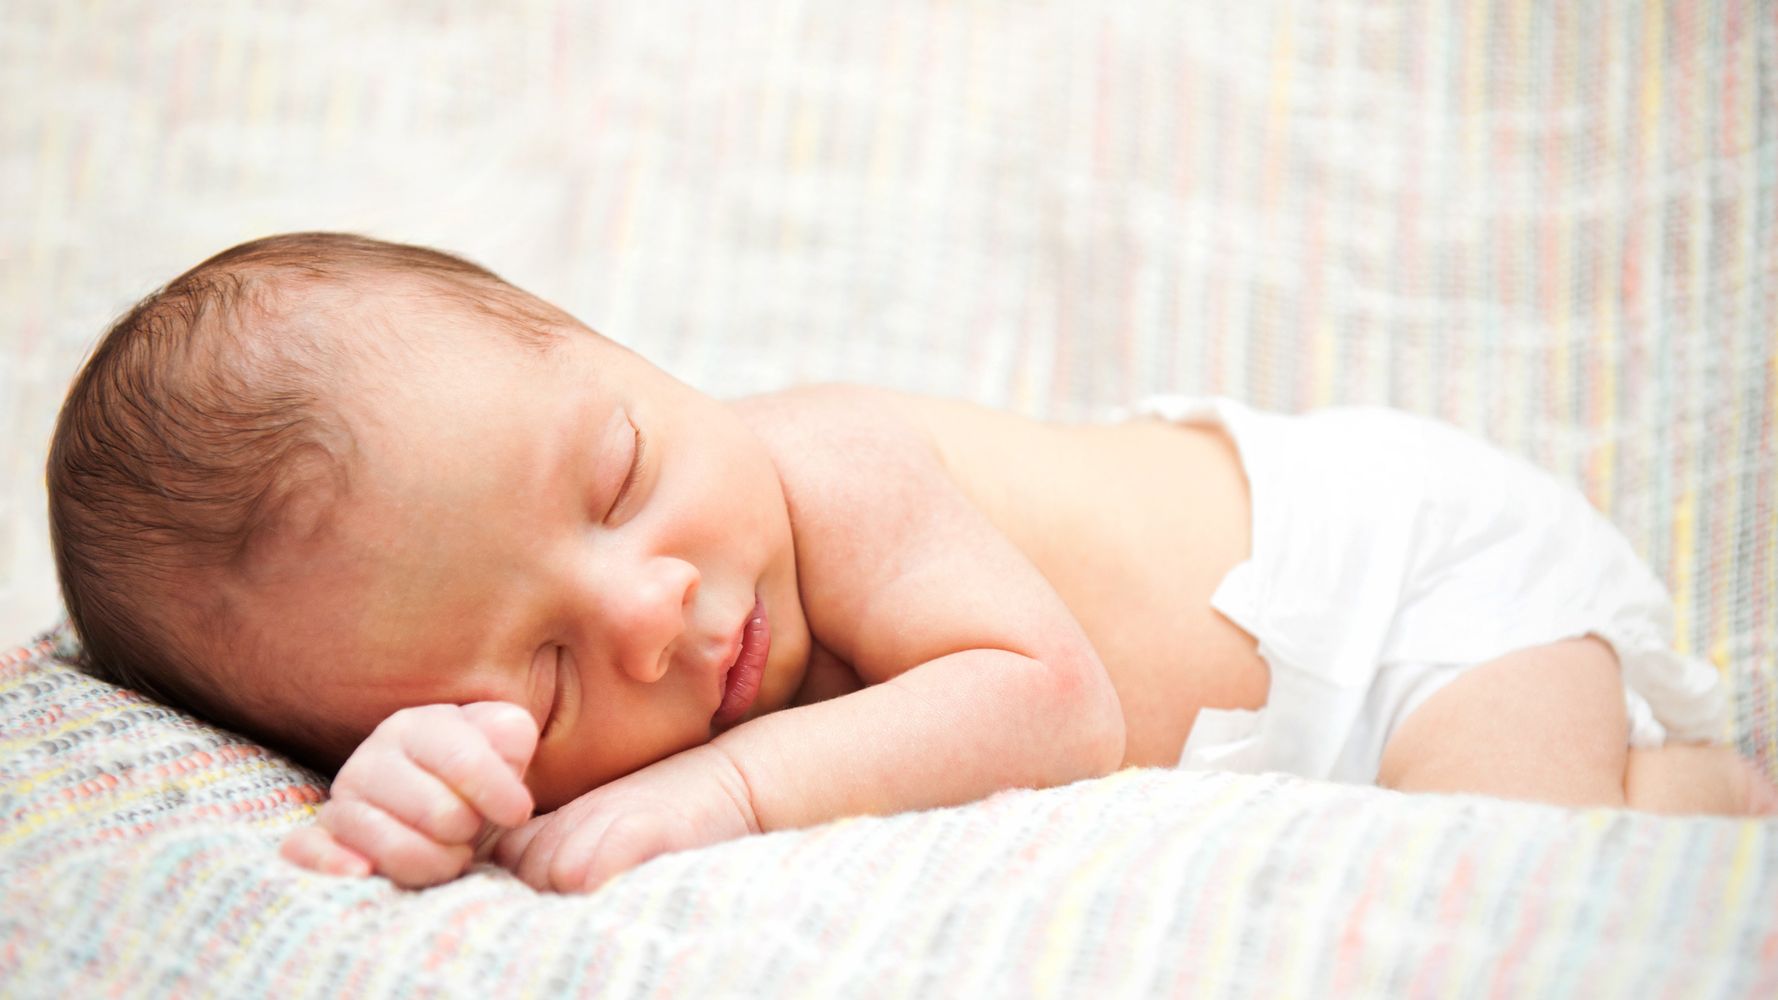 Pic De Chaleur Comment Habiller Votre Bebe La Nuit Le Huffington Post Life